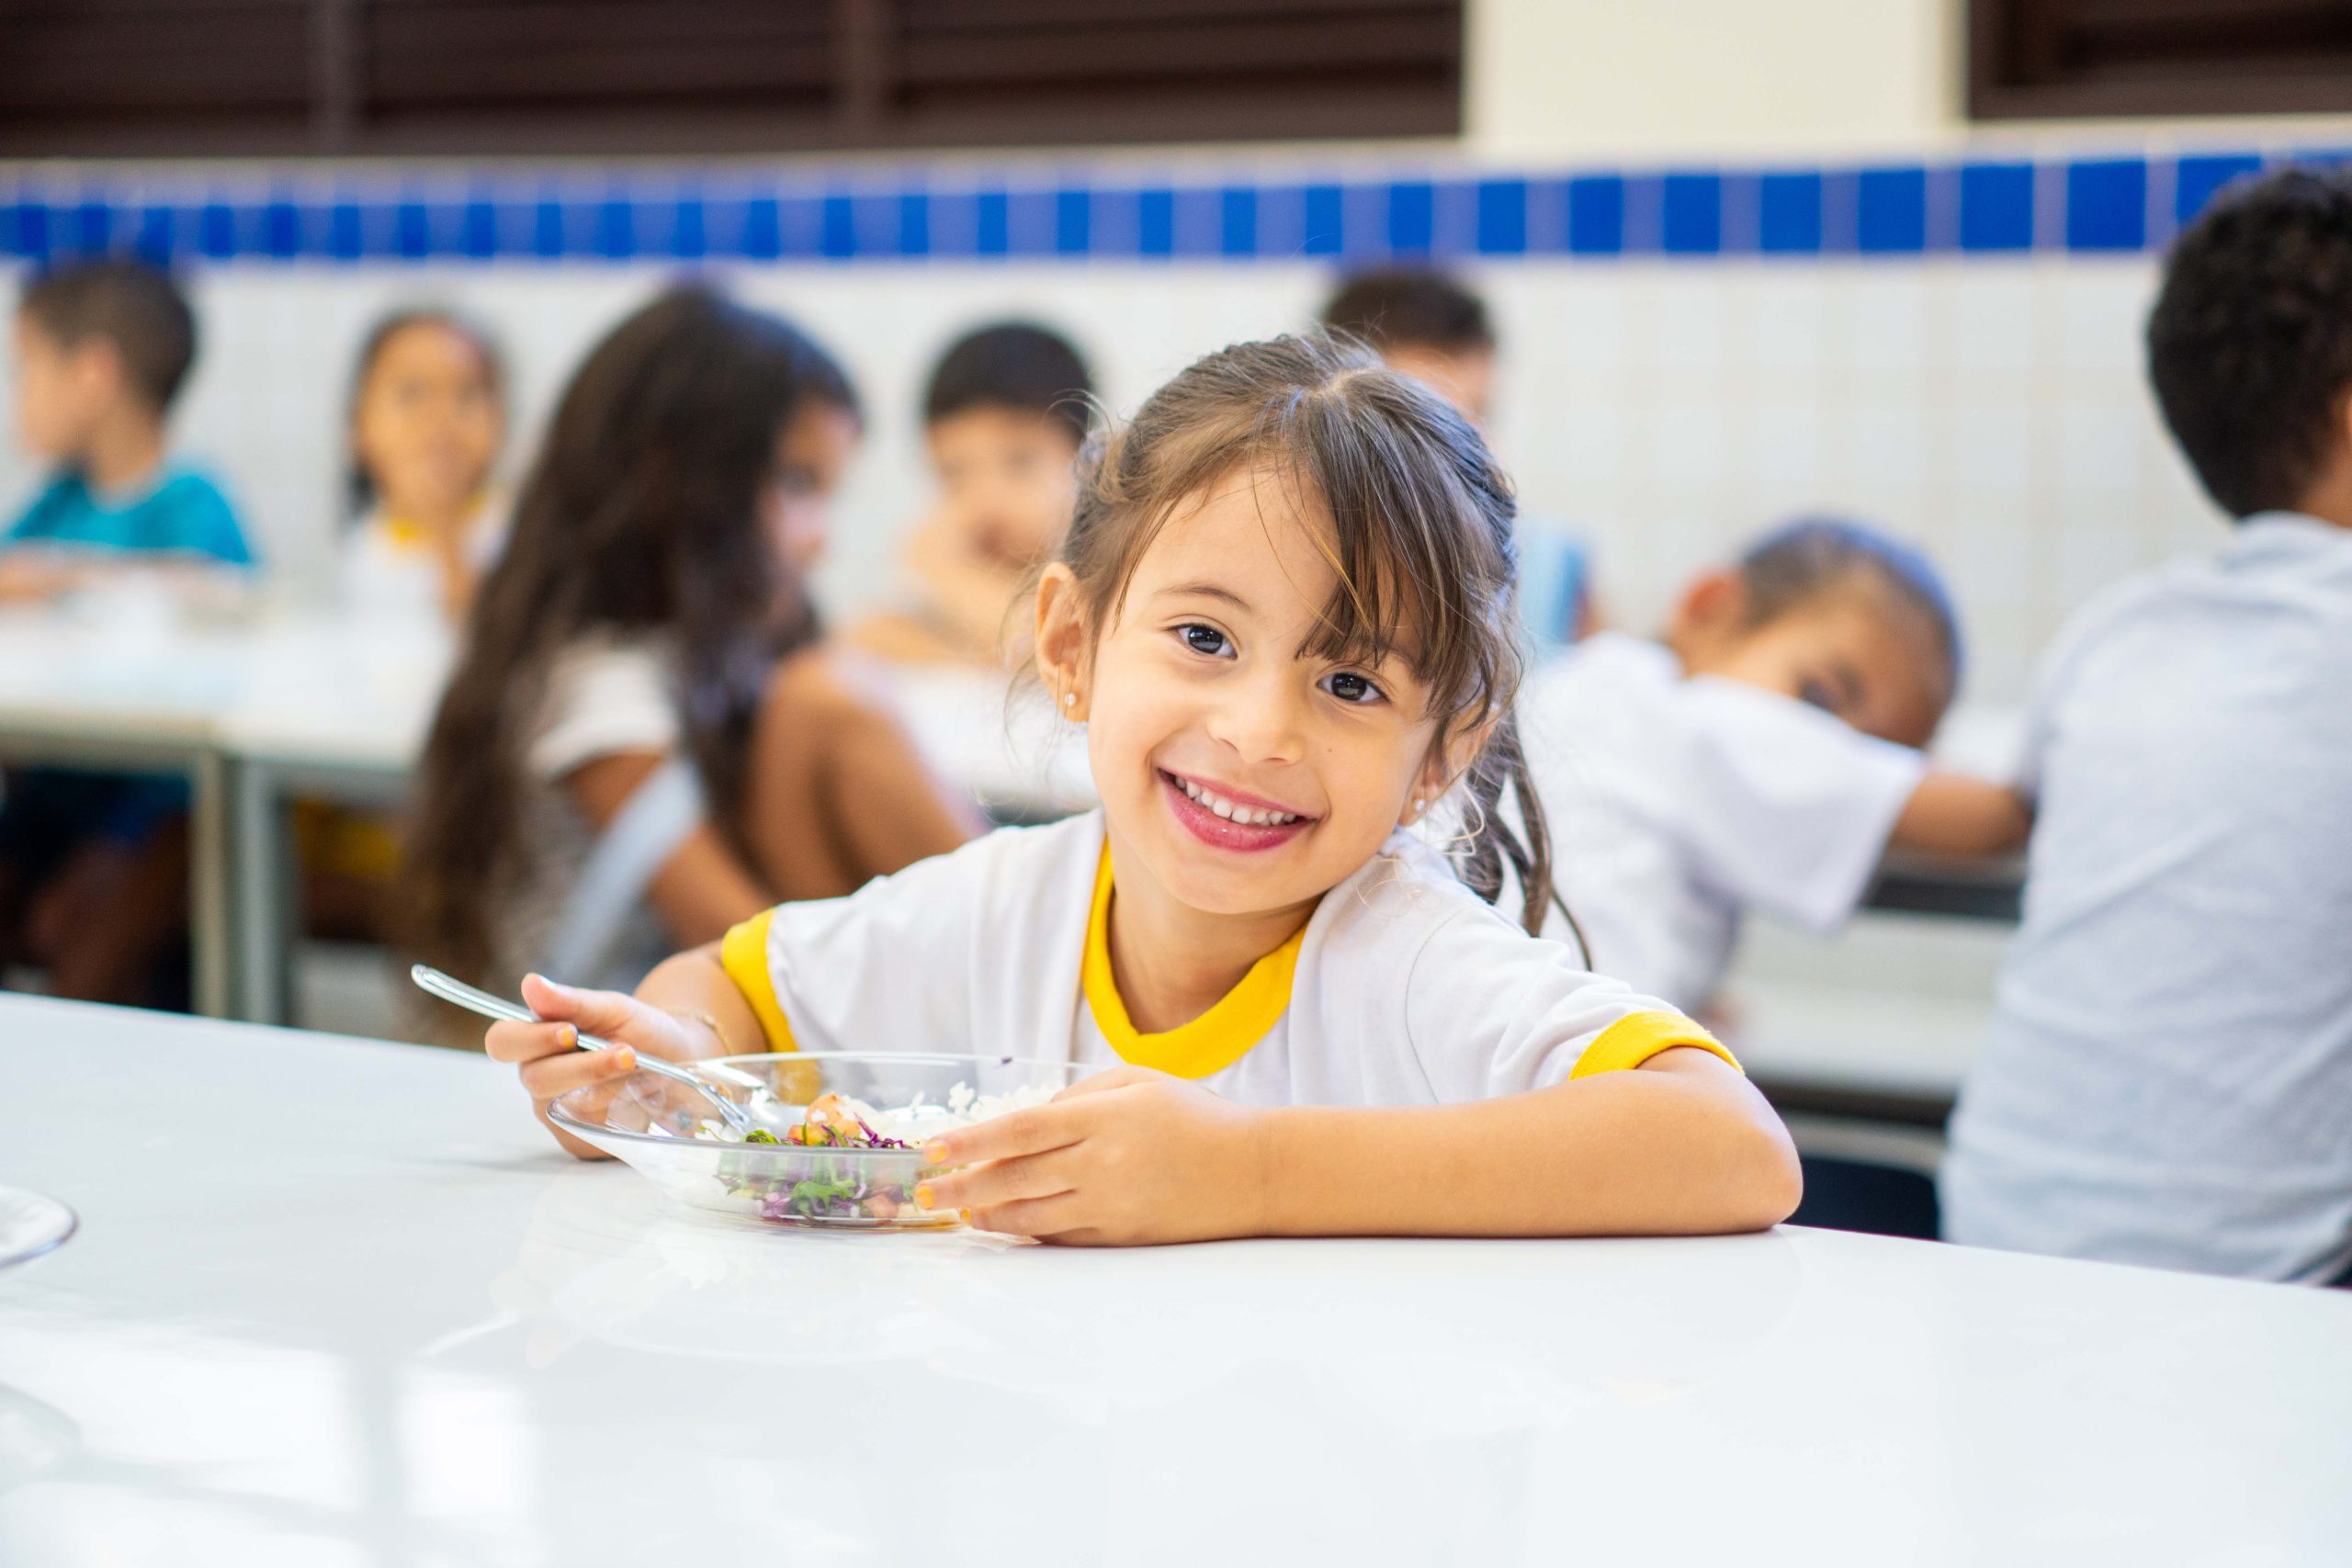 Segurança alimentar é prioridade nas refeições da rede pública de ensino do Distrito Federal